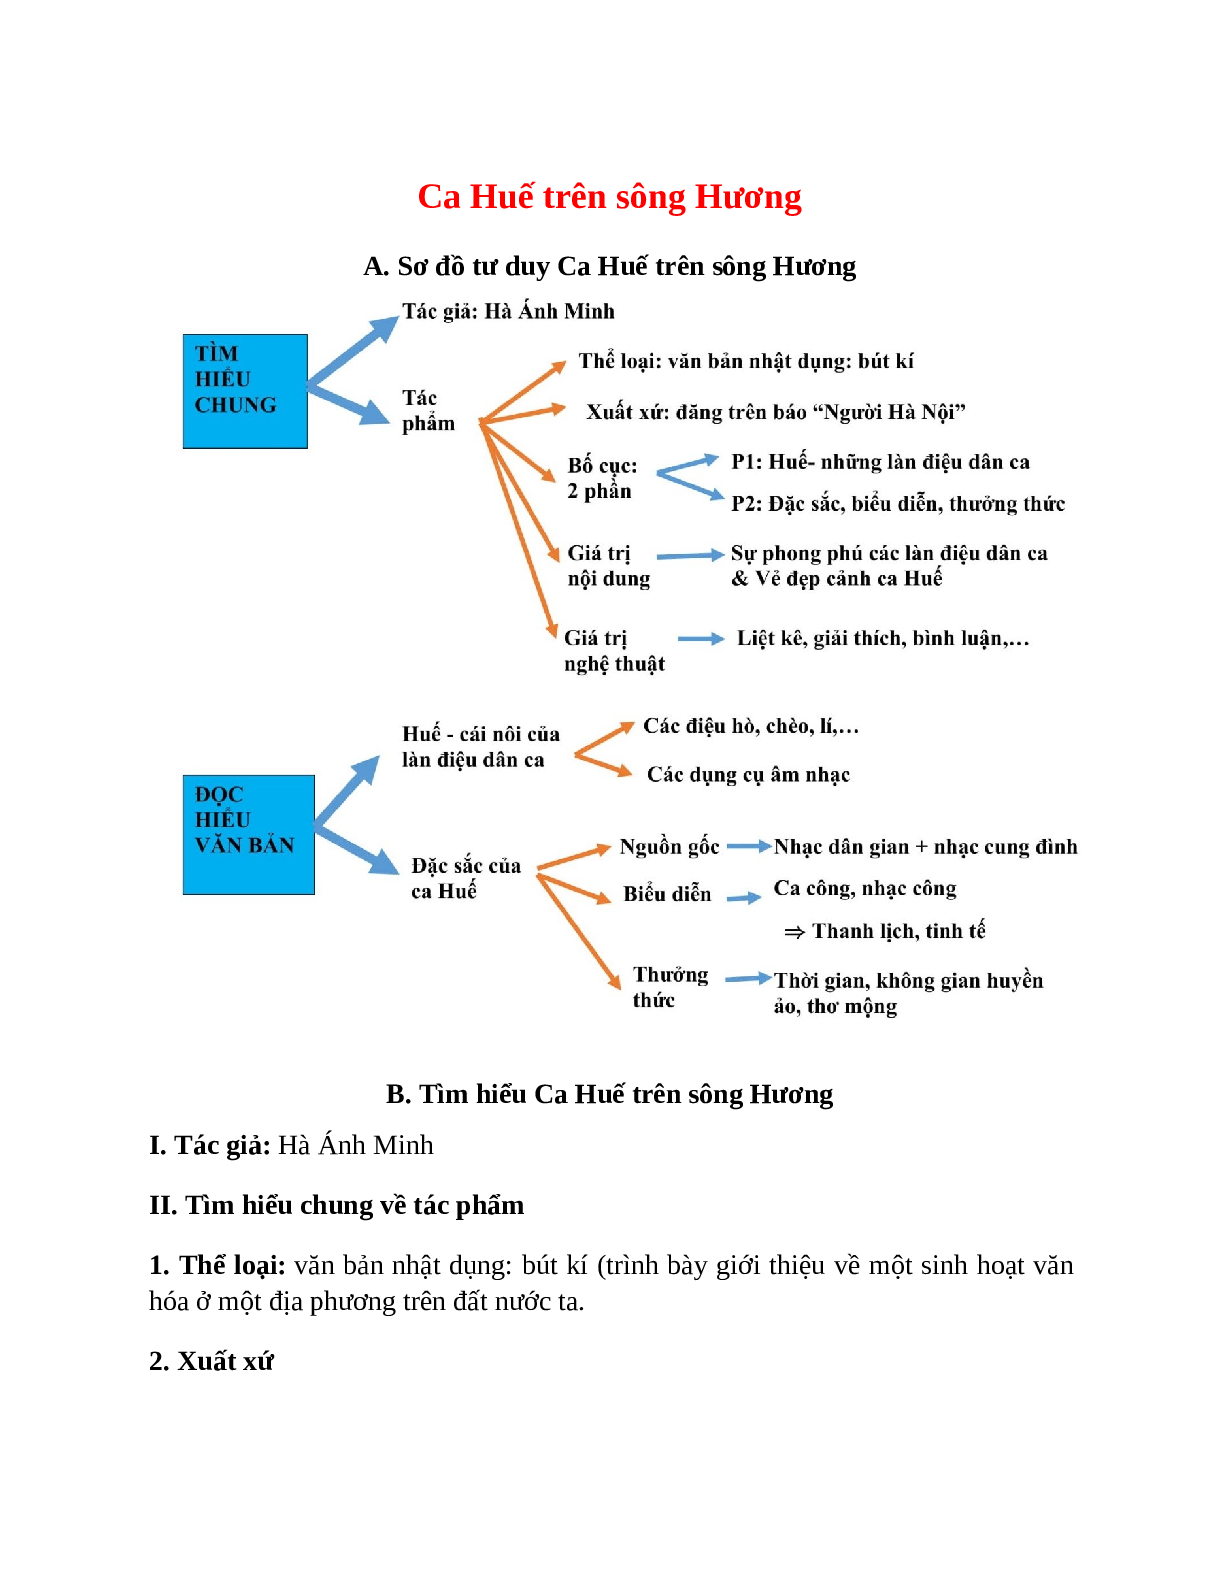 Sơ đồ tư duy bài Ca Huế trên sông Hương dễ nhớ, ngắn nhất - Ngữ văn lớp 7 (trang 1)